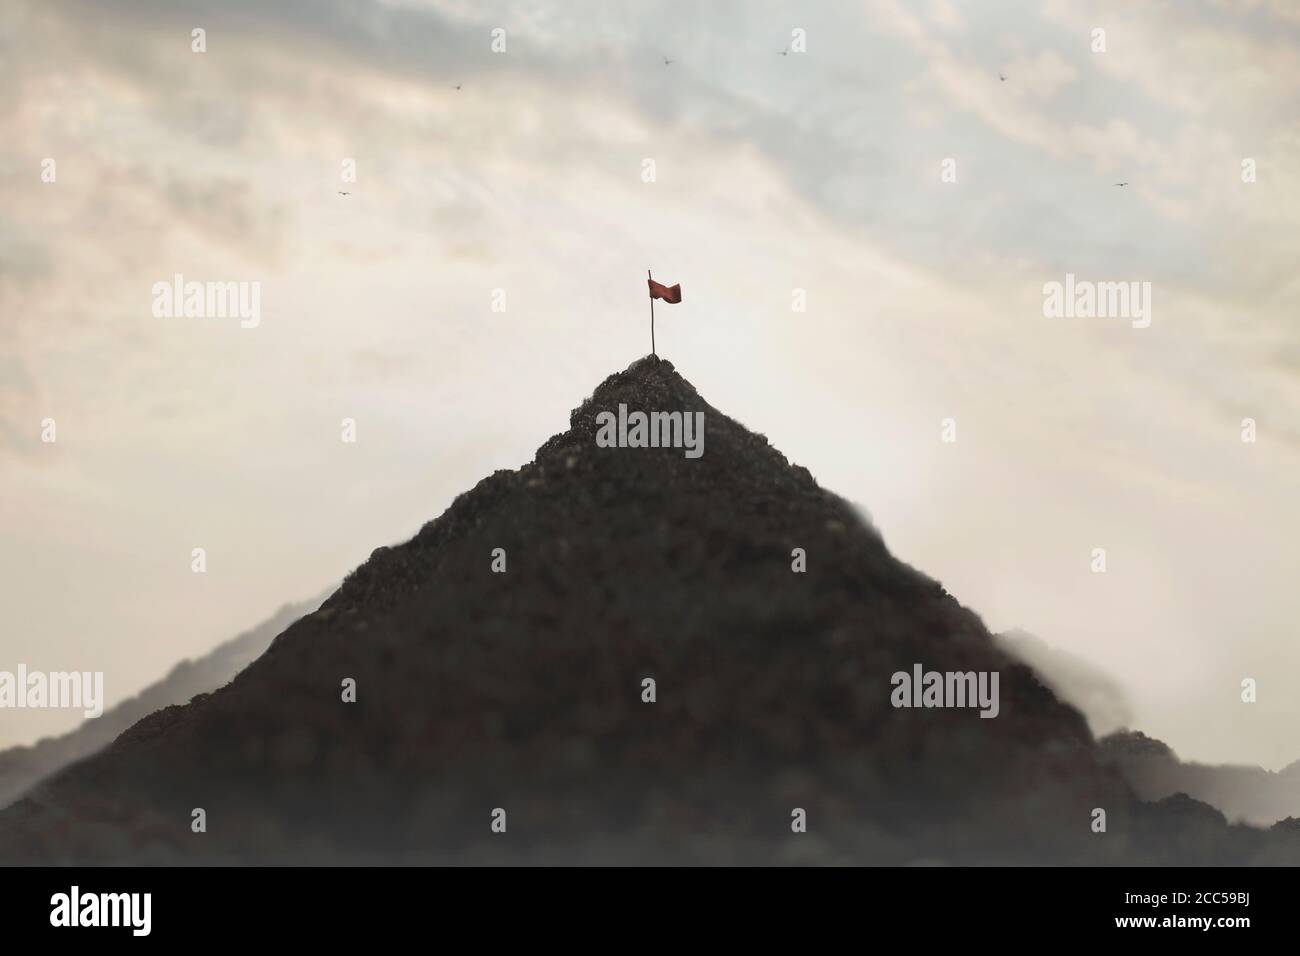 bandera plantada en la cima de una montaña, concepto de éxito Foto de stock